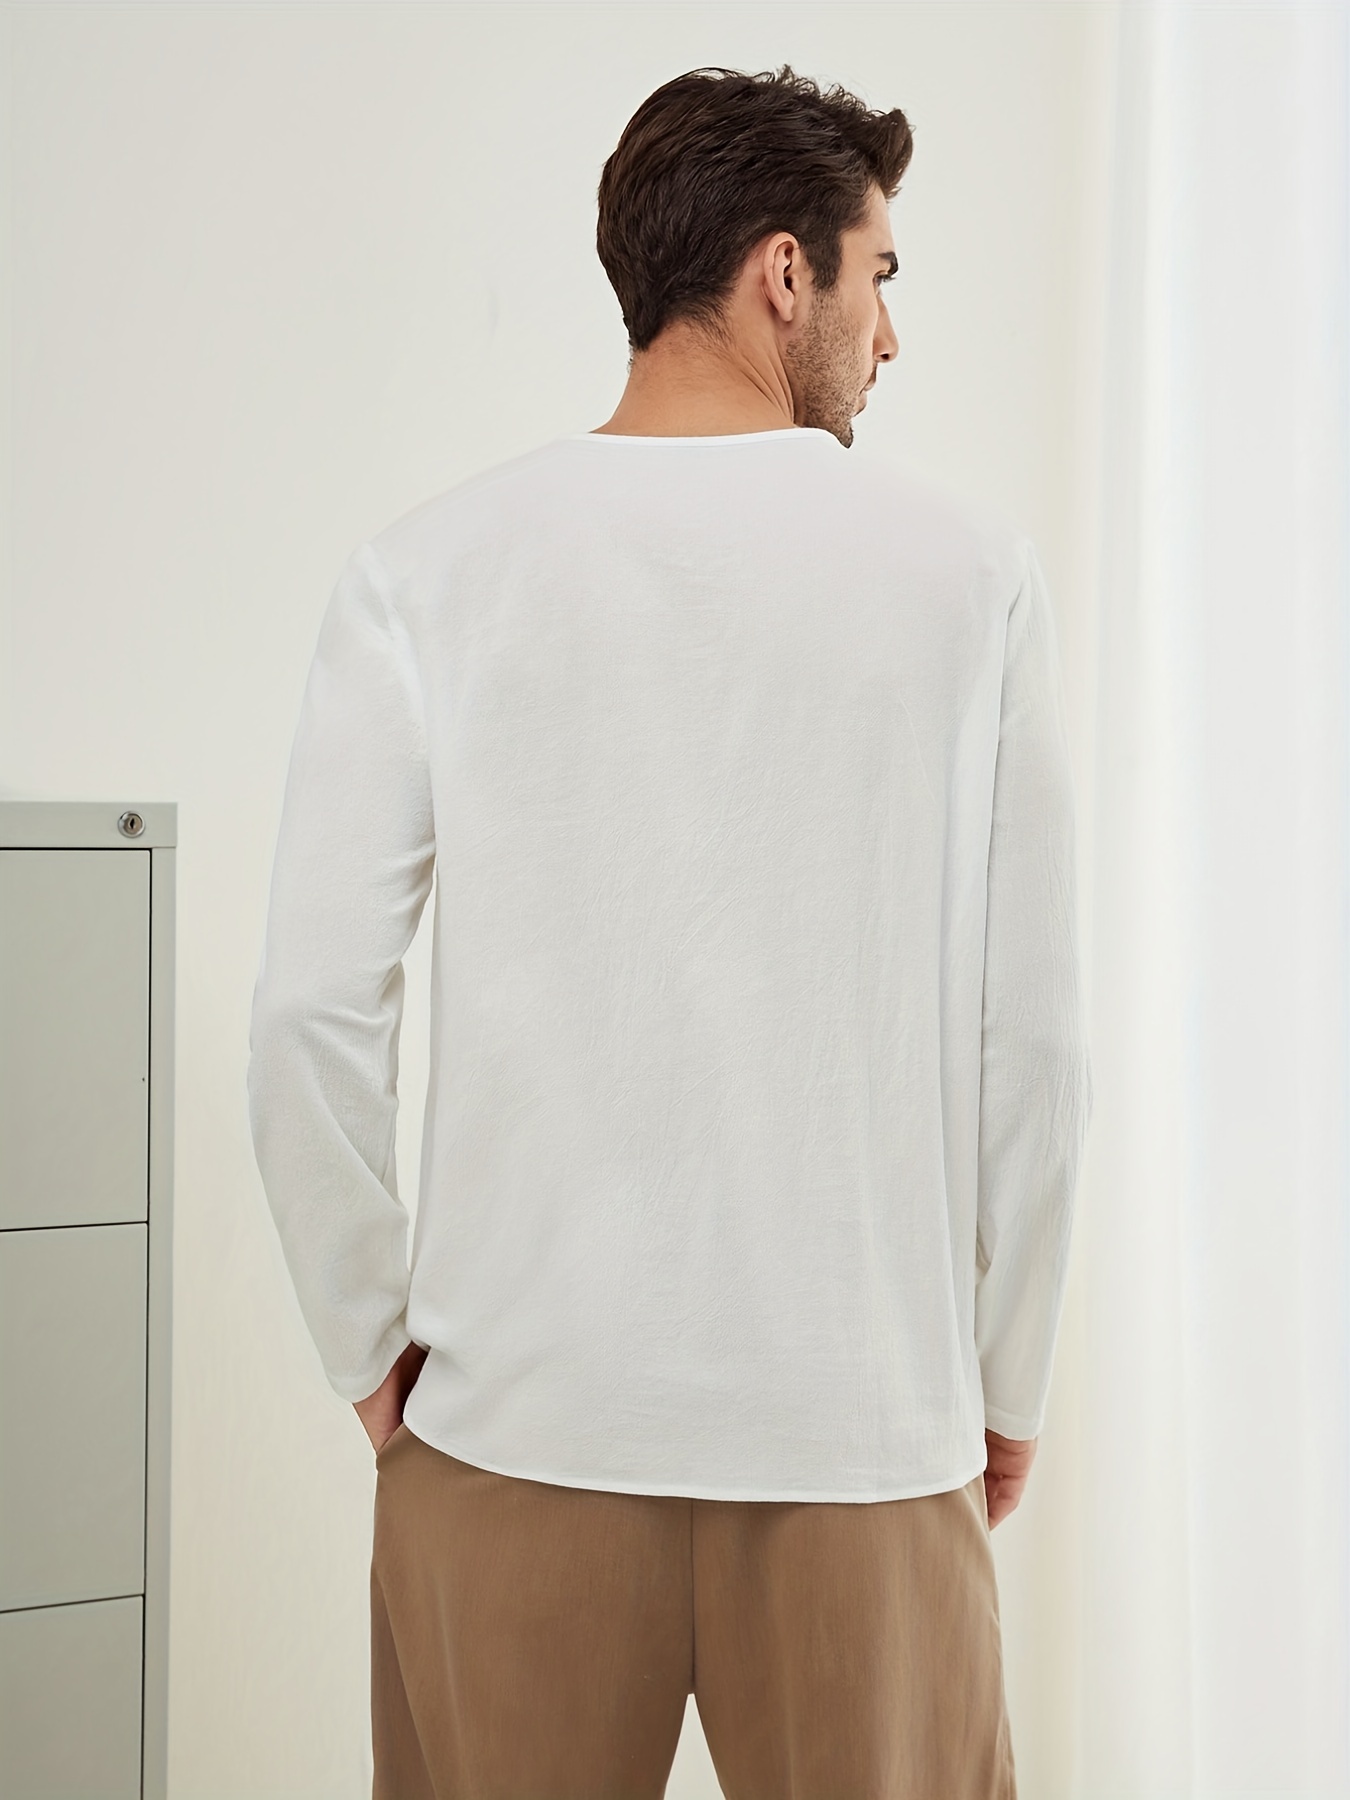 Mens White Long-Sleeve T-Shirt, Designer Menswear